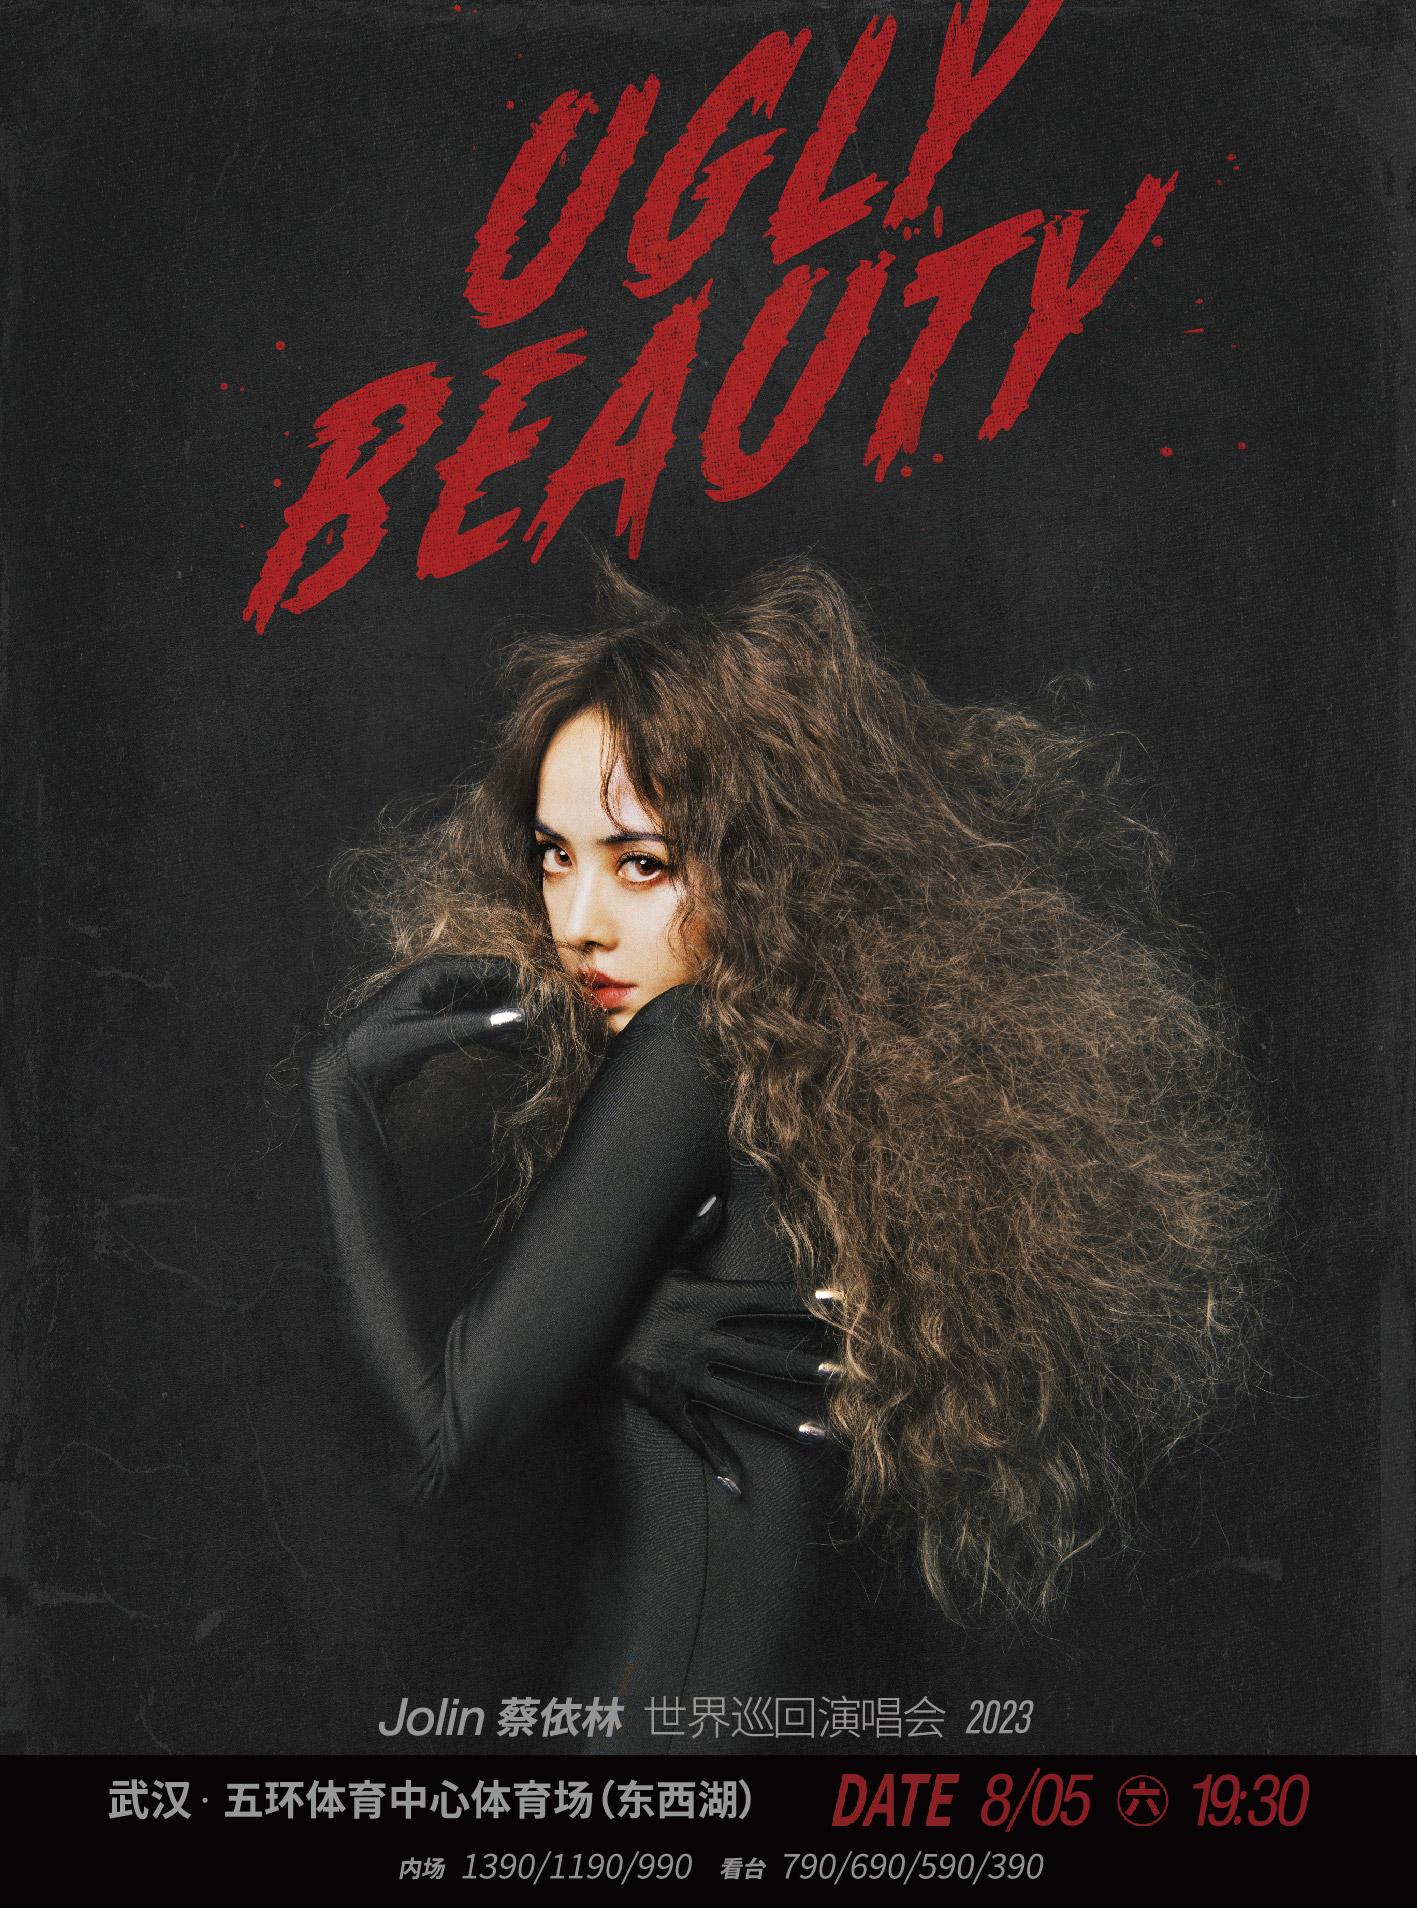 【武汉】强实名 不可转让不可退Jolin蔡依林Ugly Beauty 2023世界巡回演唱会